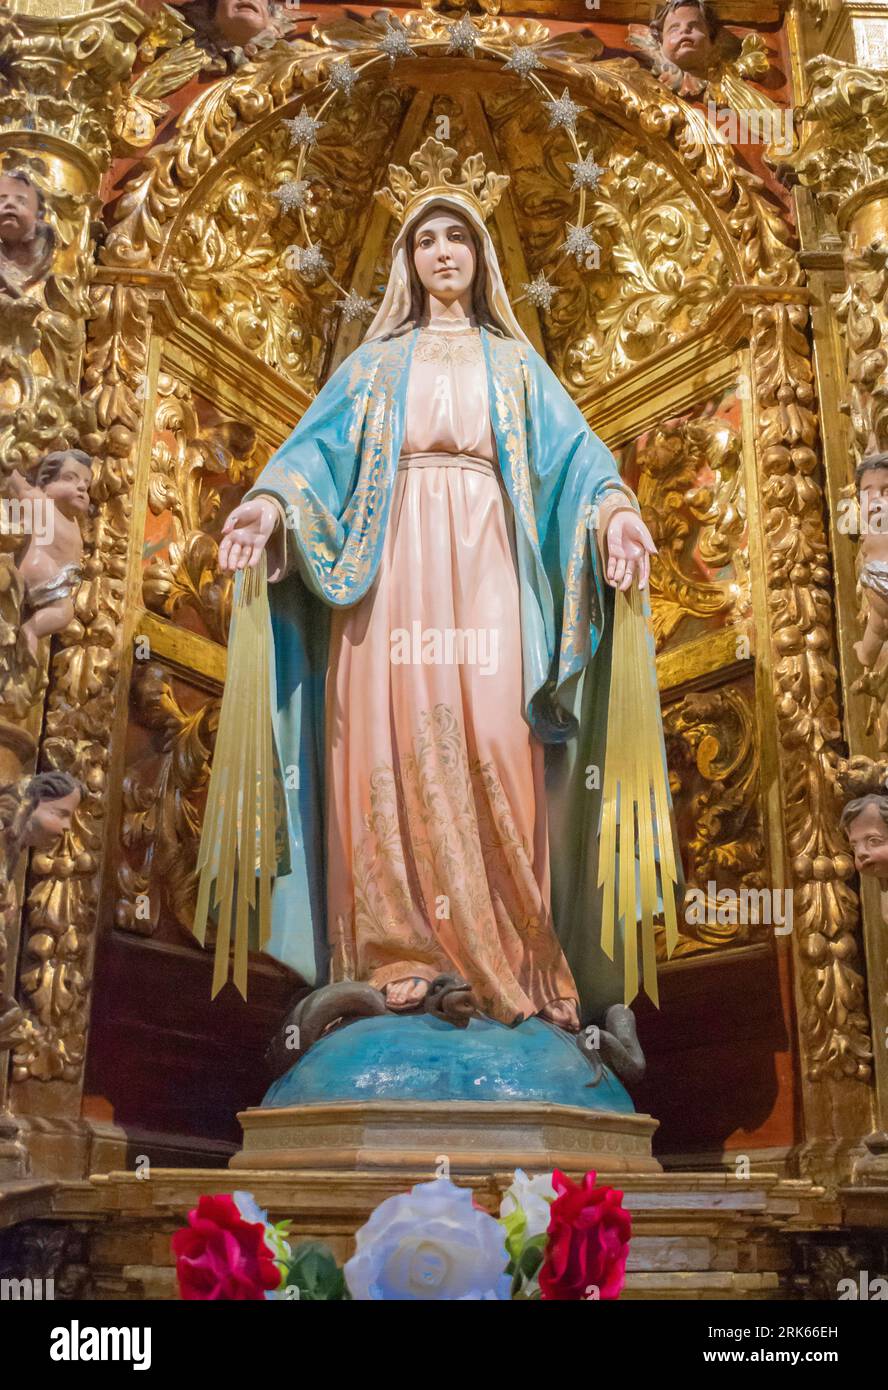 Uno scatto architettonico di una statua di una figura religiosa situata in una grande cattedrale con una stella sopra di essa Foto Stock